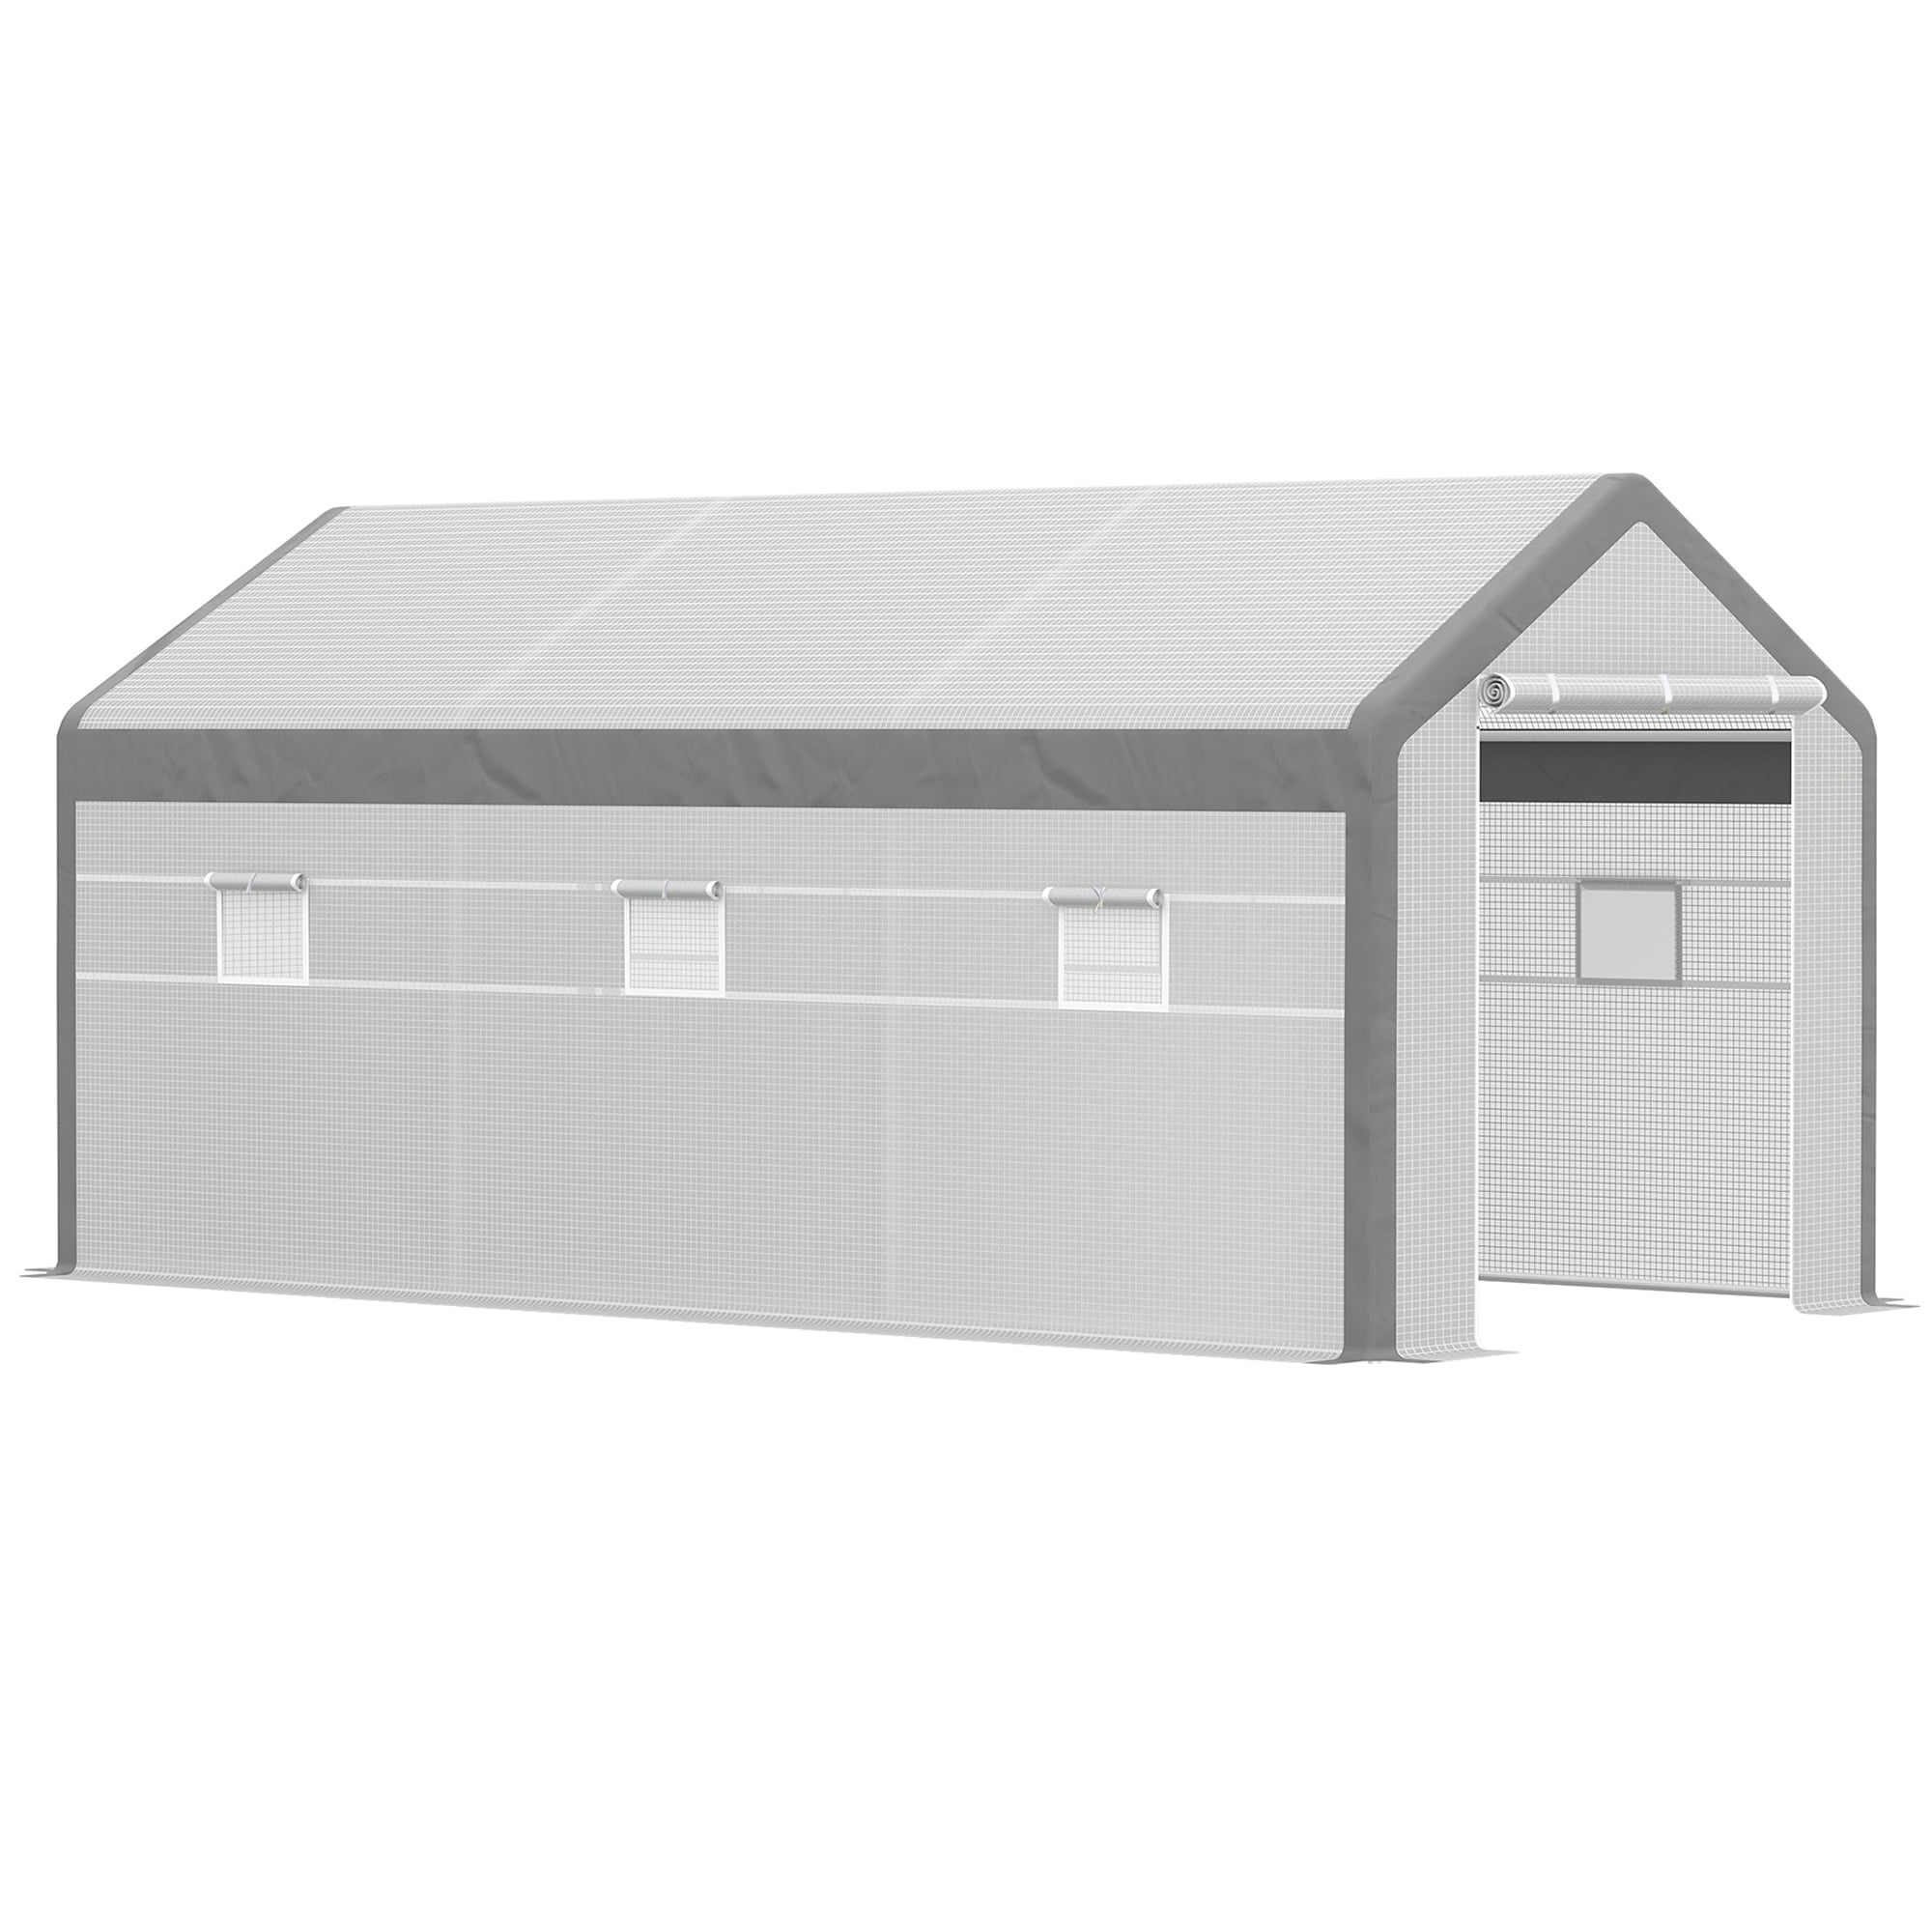 Pair Garage Door 6.5" Lift Handles w/ Hardware DIY Truck Overhead Shed Barn DIY 